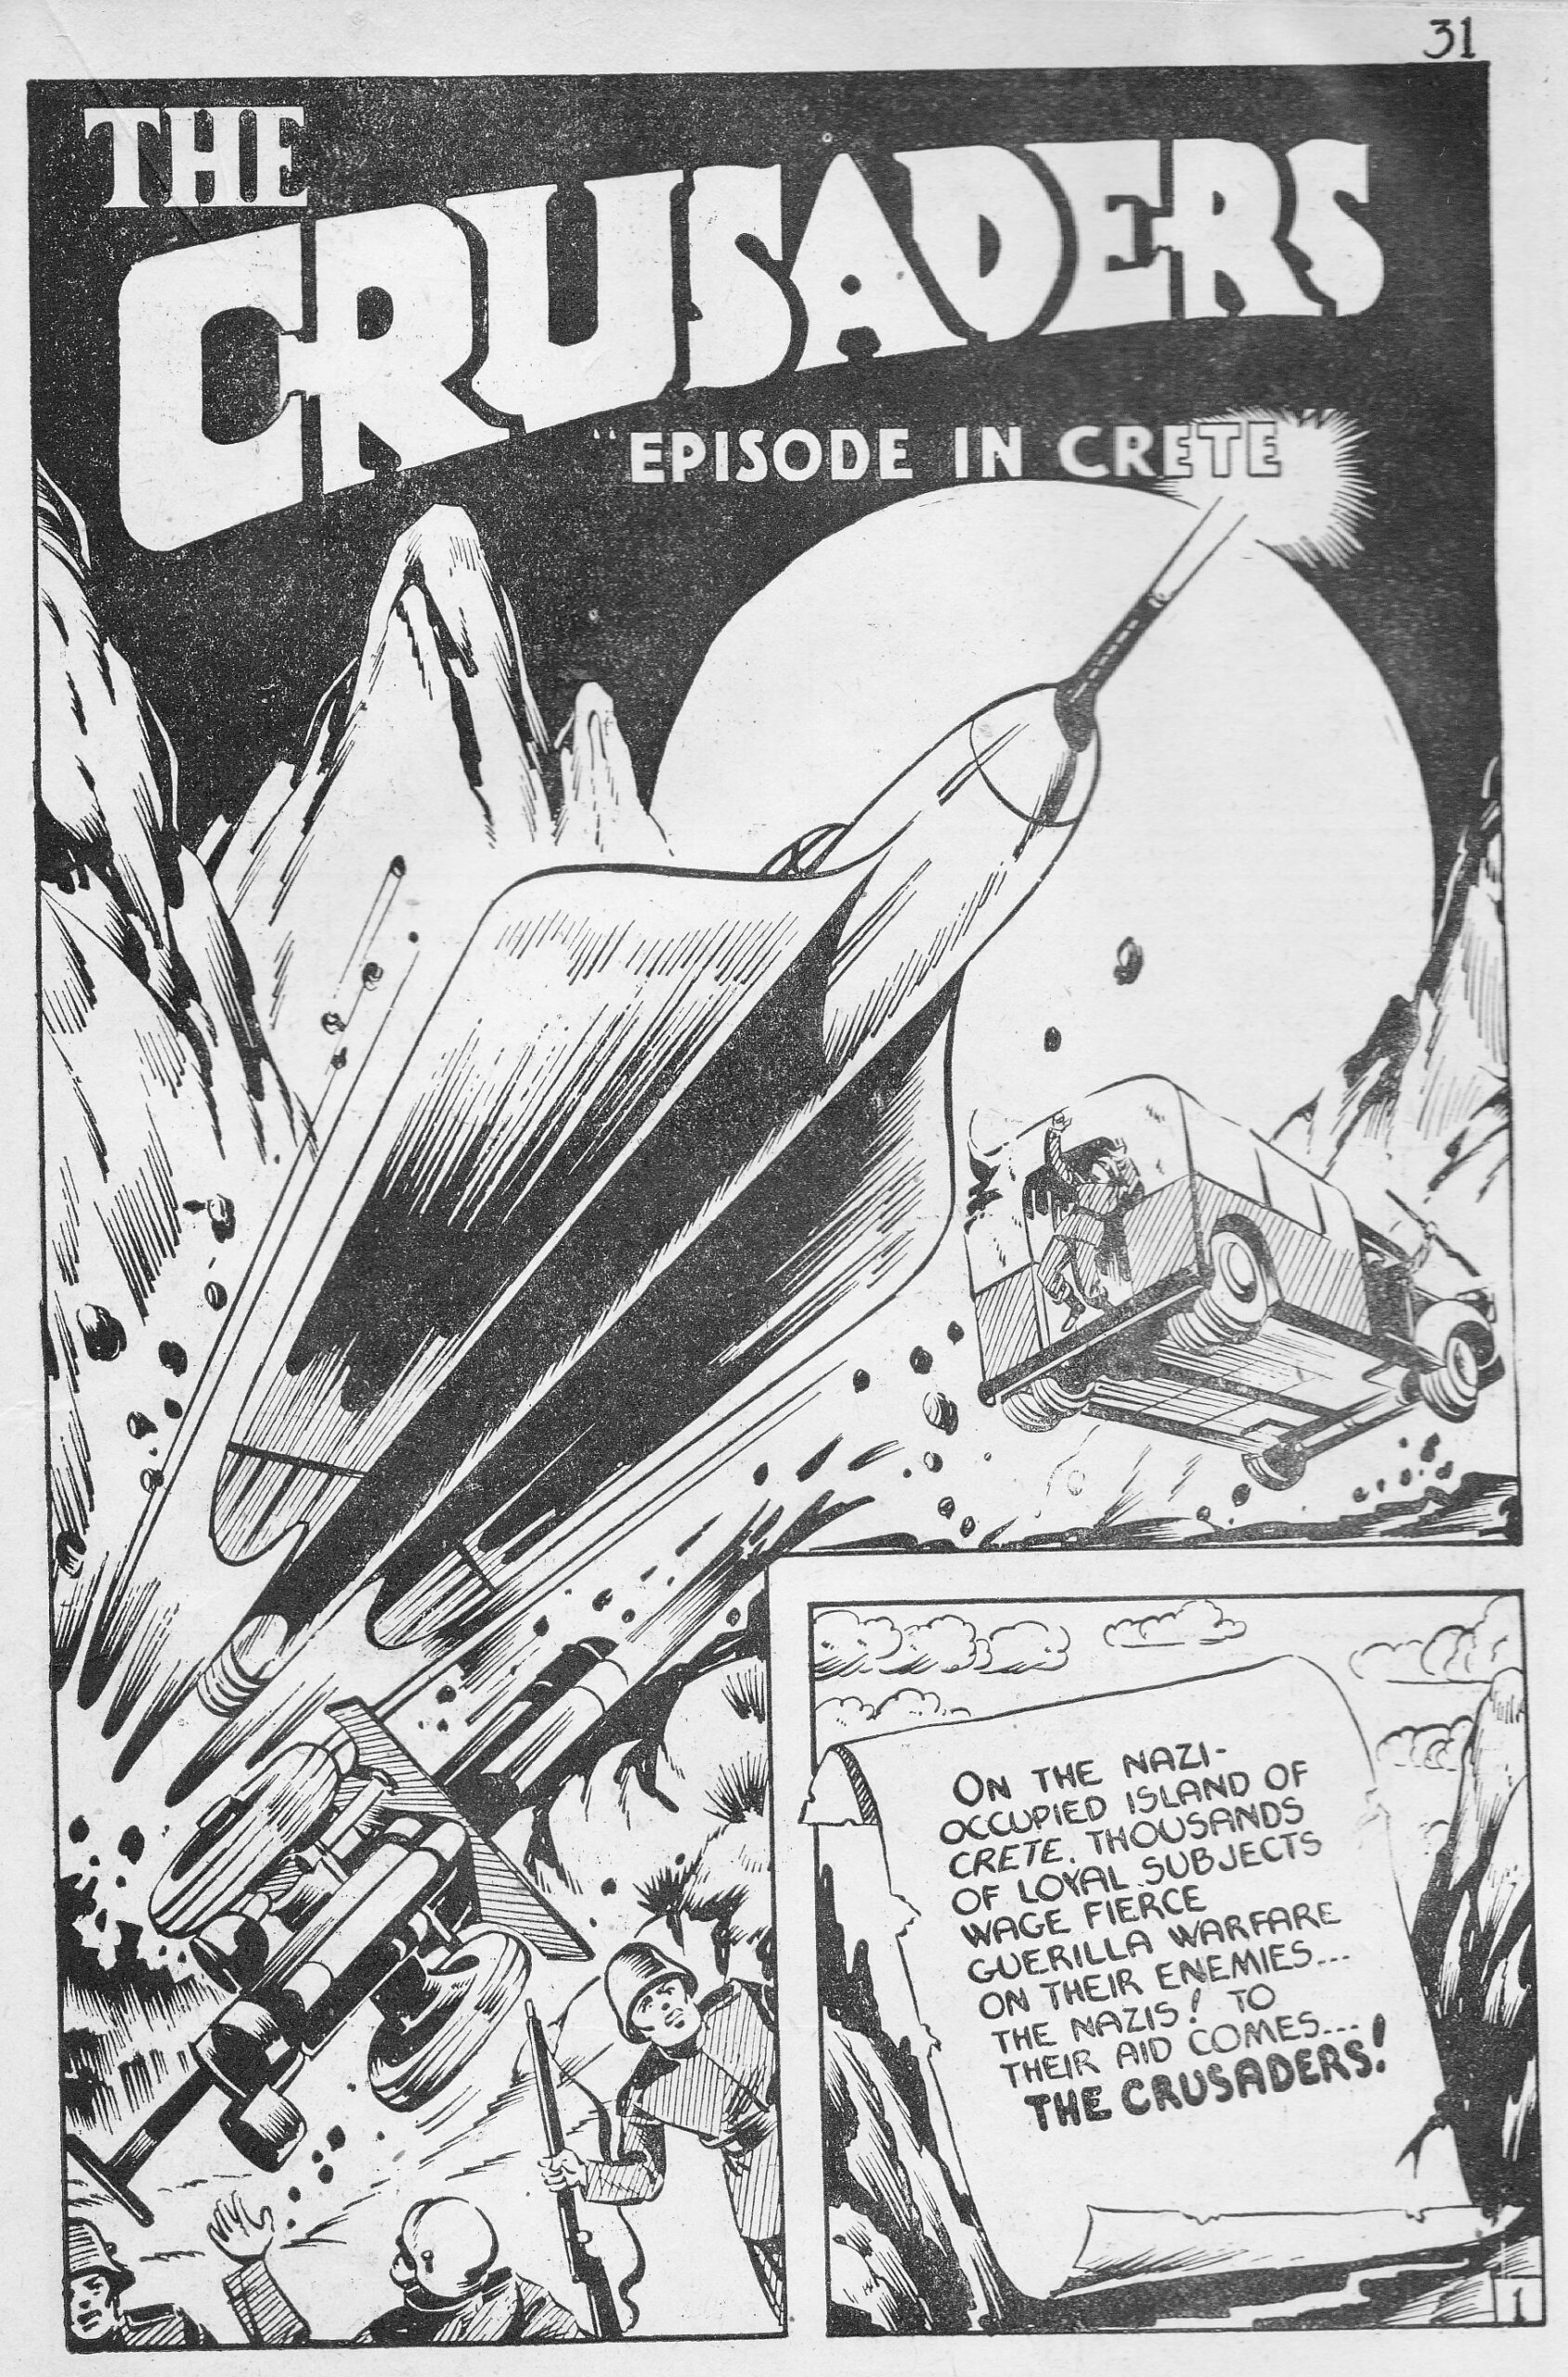 C:\Users\Robert\Documents\CARTOONING ILLUSTRATION ANIMATION\IMAGE CARTOON\IMAGE CARTOON C\THE CRUSADERS, Grand Slam Comics, 2-2, Jan 1943, 31.jpg